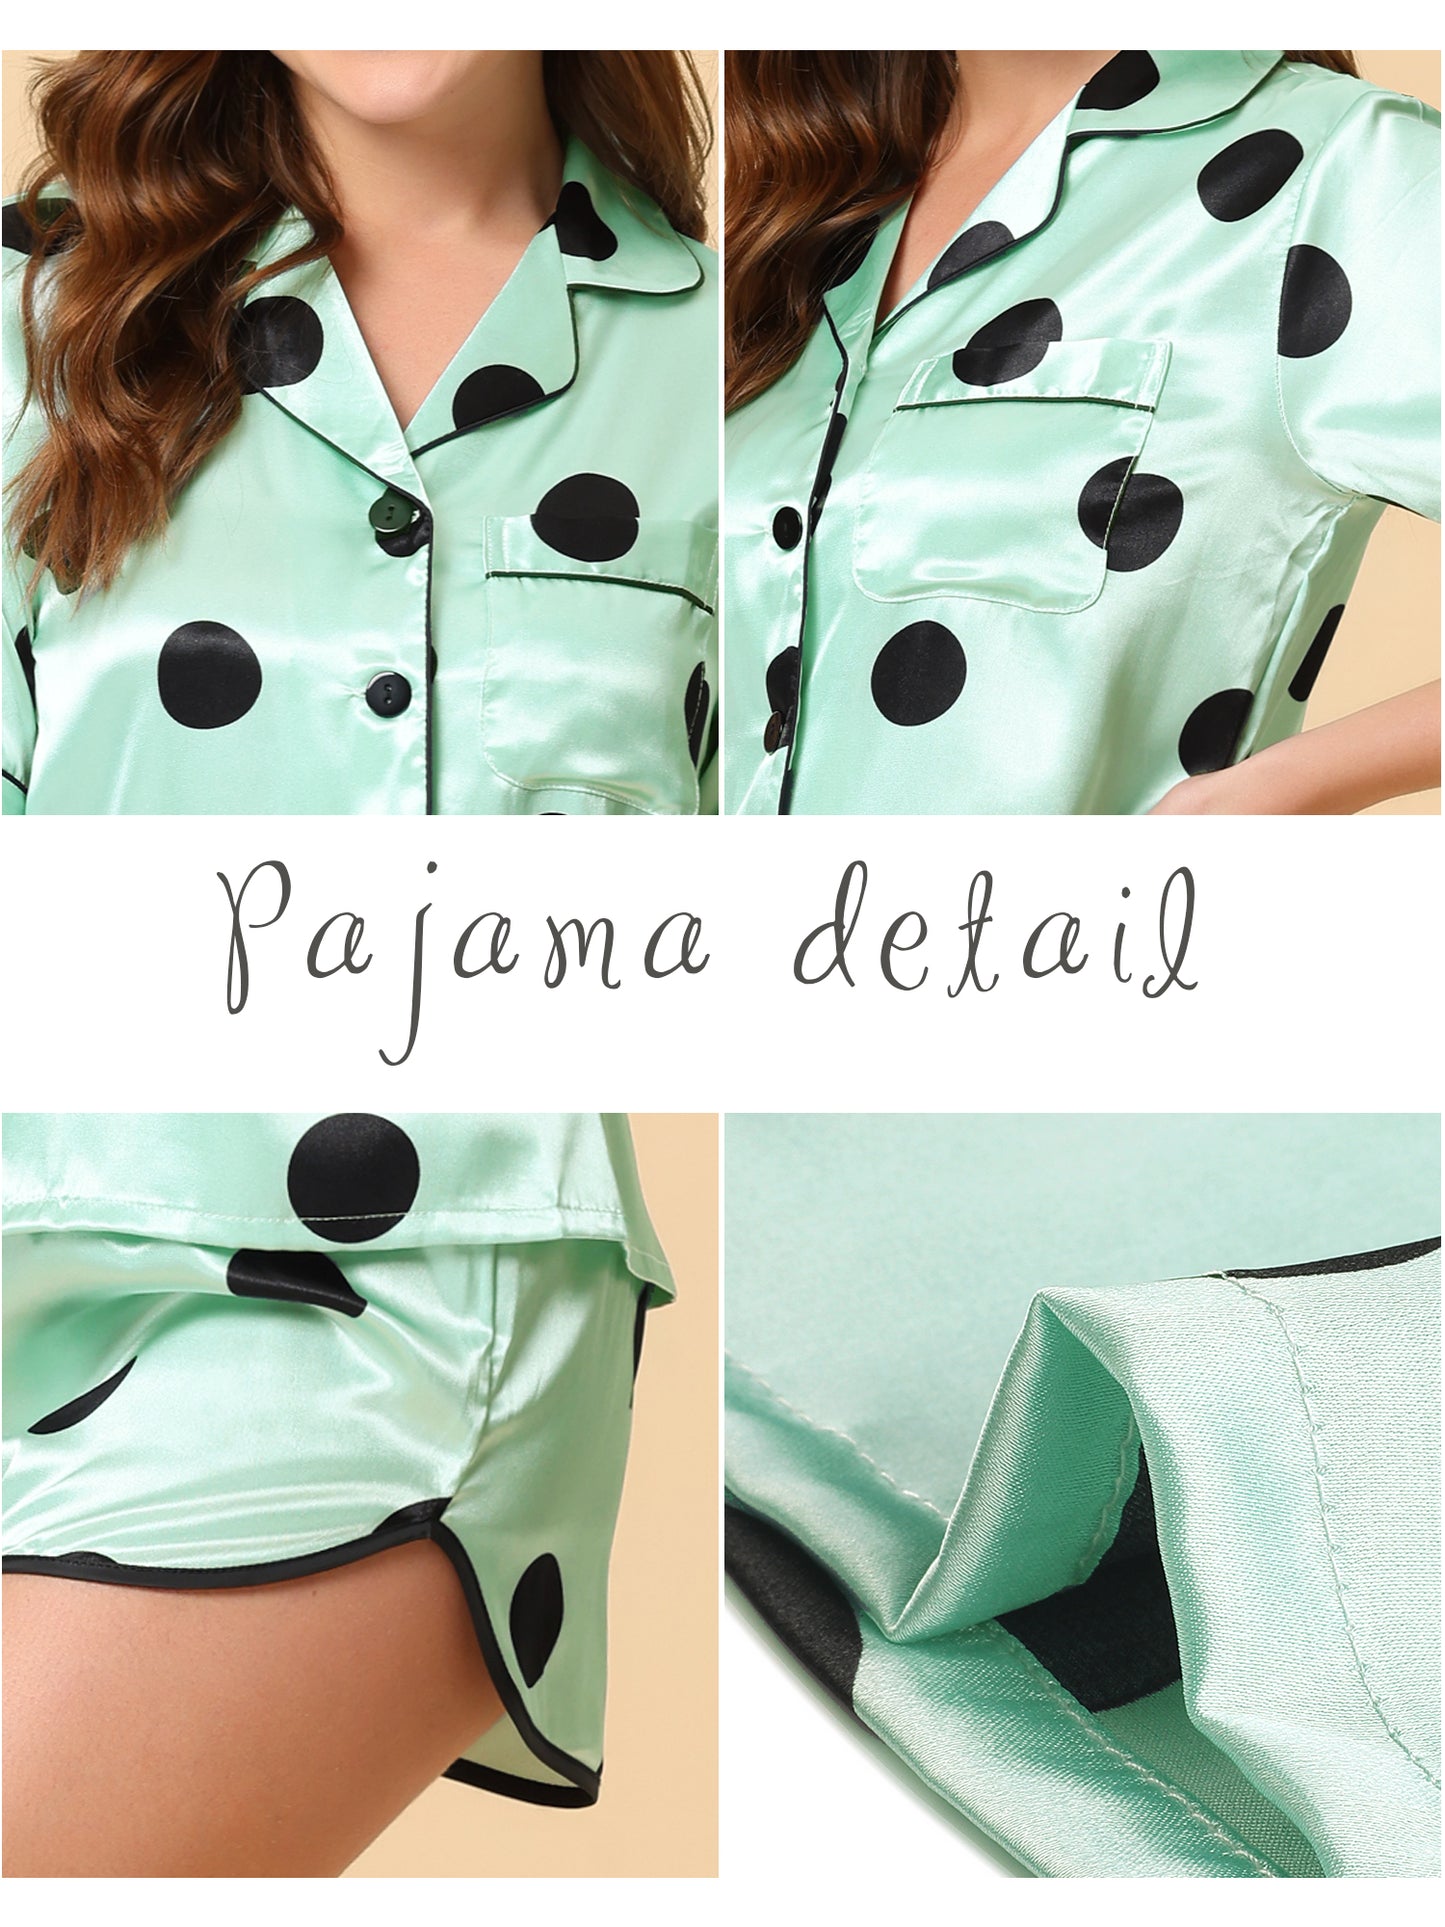 cheibear Satin 2pcs Lounge Sleepwear T-Shirt and Shorts Polka Dots Pajama Sets Green